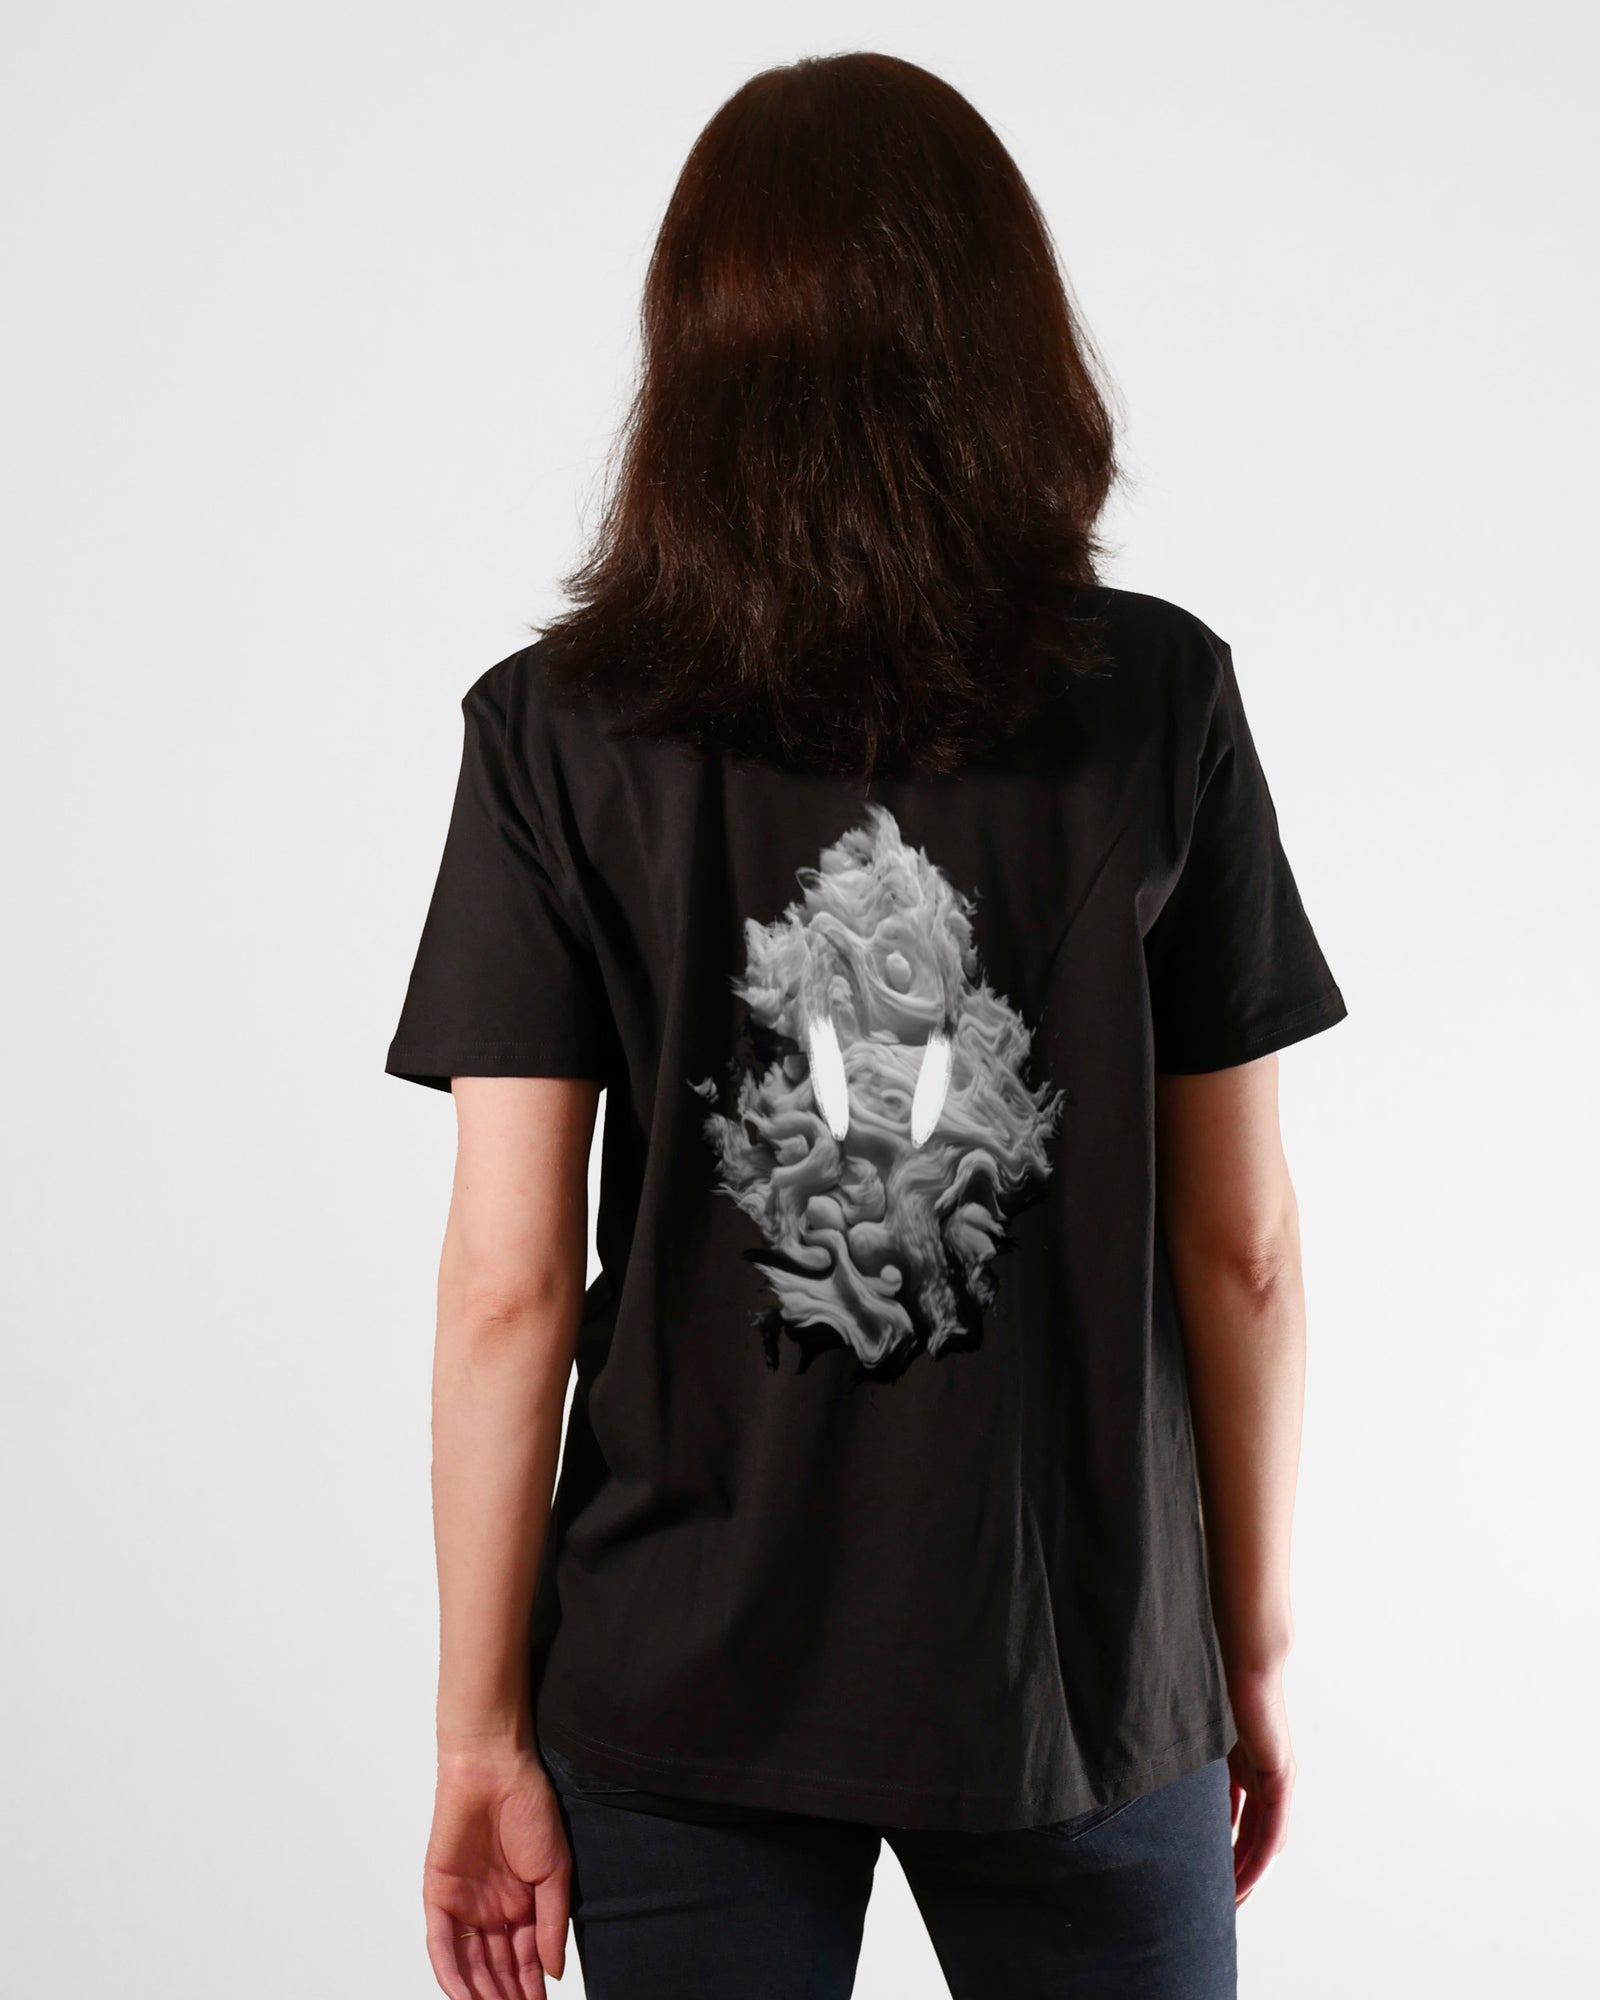 Scary Smoke | 3-Style T-Shirt